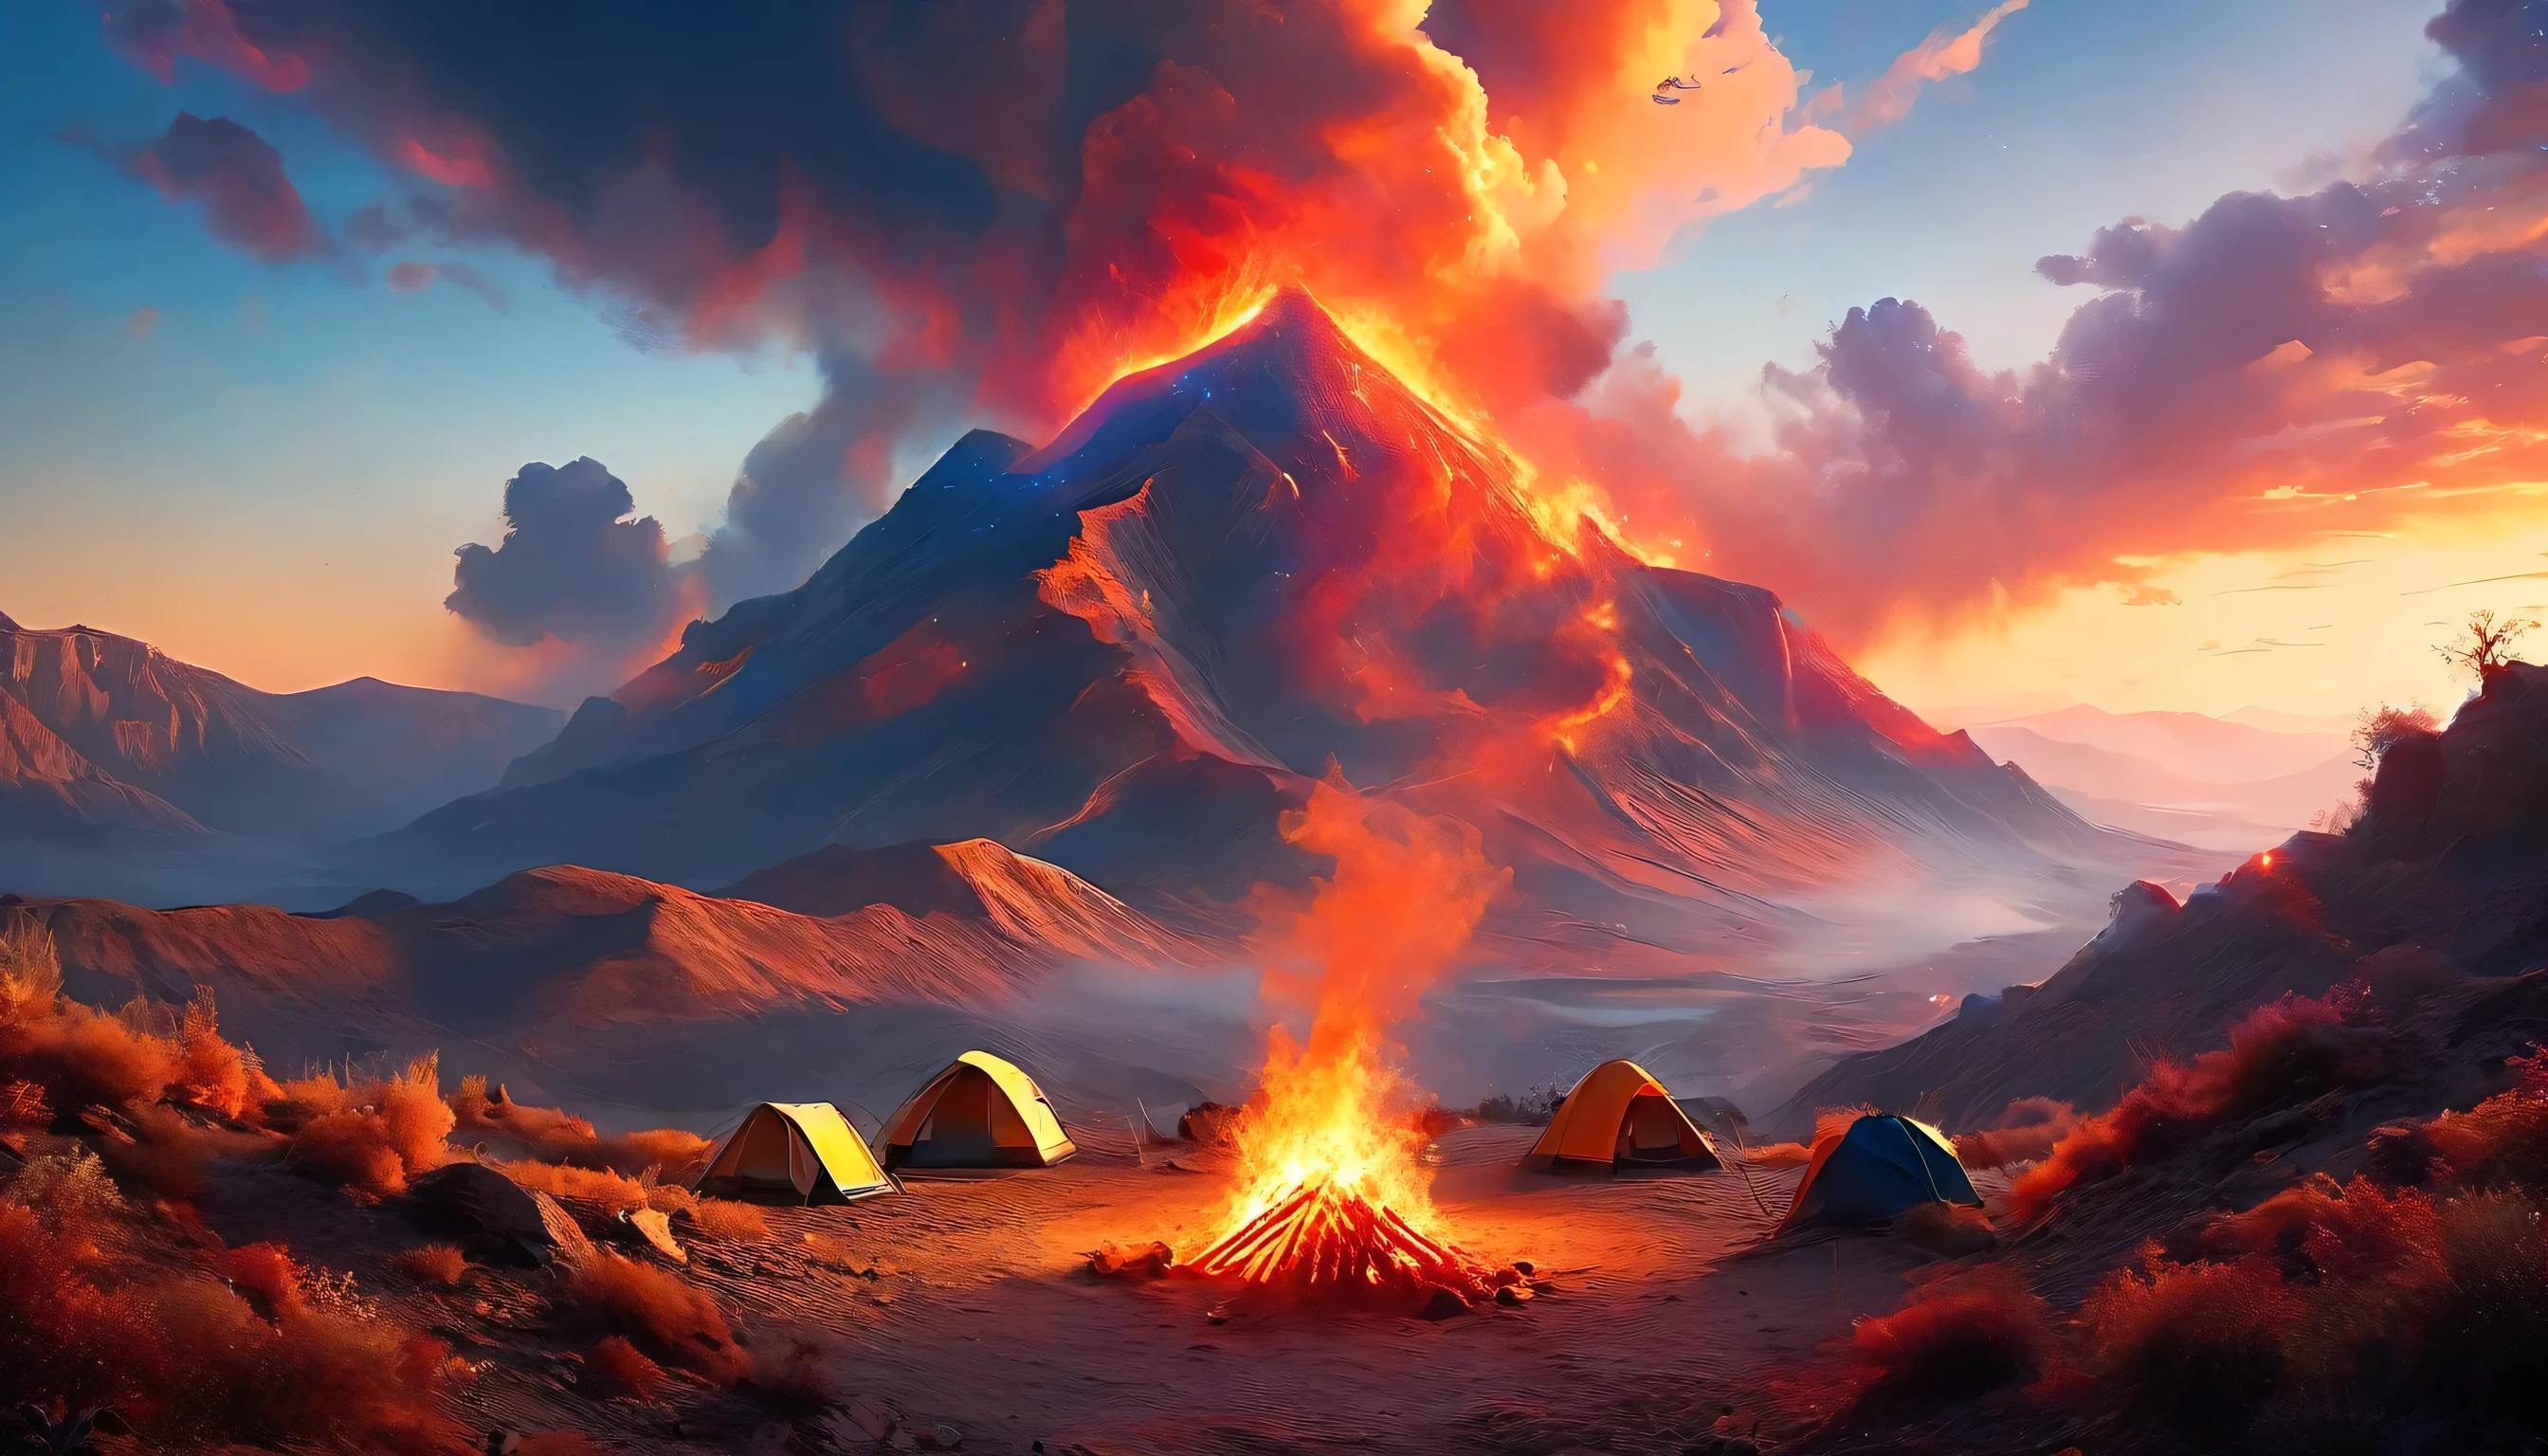 arafed, uma foto de um acampamento (tent: 1.2) e pequeno (fogueira: 1,2), no topo de uma montanha deserta, seu pôr do sol o céu está em vários tons de  (vermelho: 1.1), (laranja: 1.1), (Azul: 1.1) (roxo:1.1) há fumaça subindo do acampamento de bombeiros, há uma vista magnífica do desfiladeiro do deserto e das ravinas, há árvores esparsas no horizonte, é um momento de serenidade, paz, e relaxamento, melhor qualidade, 16k,  fotorrealismo, Sessão fotográfica vencedora do prêmio National Geographic, foto ultra ampla, Nebulosa Furiosa, senhora sombra